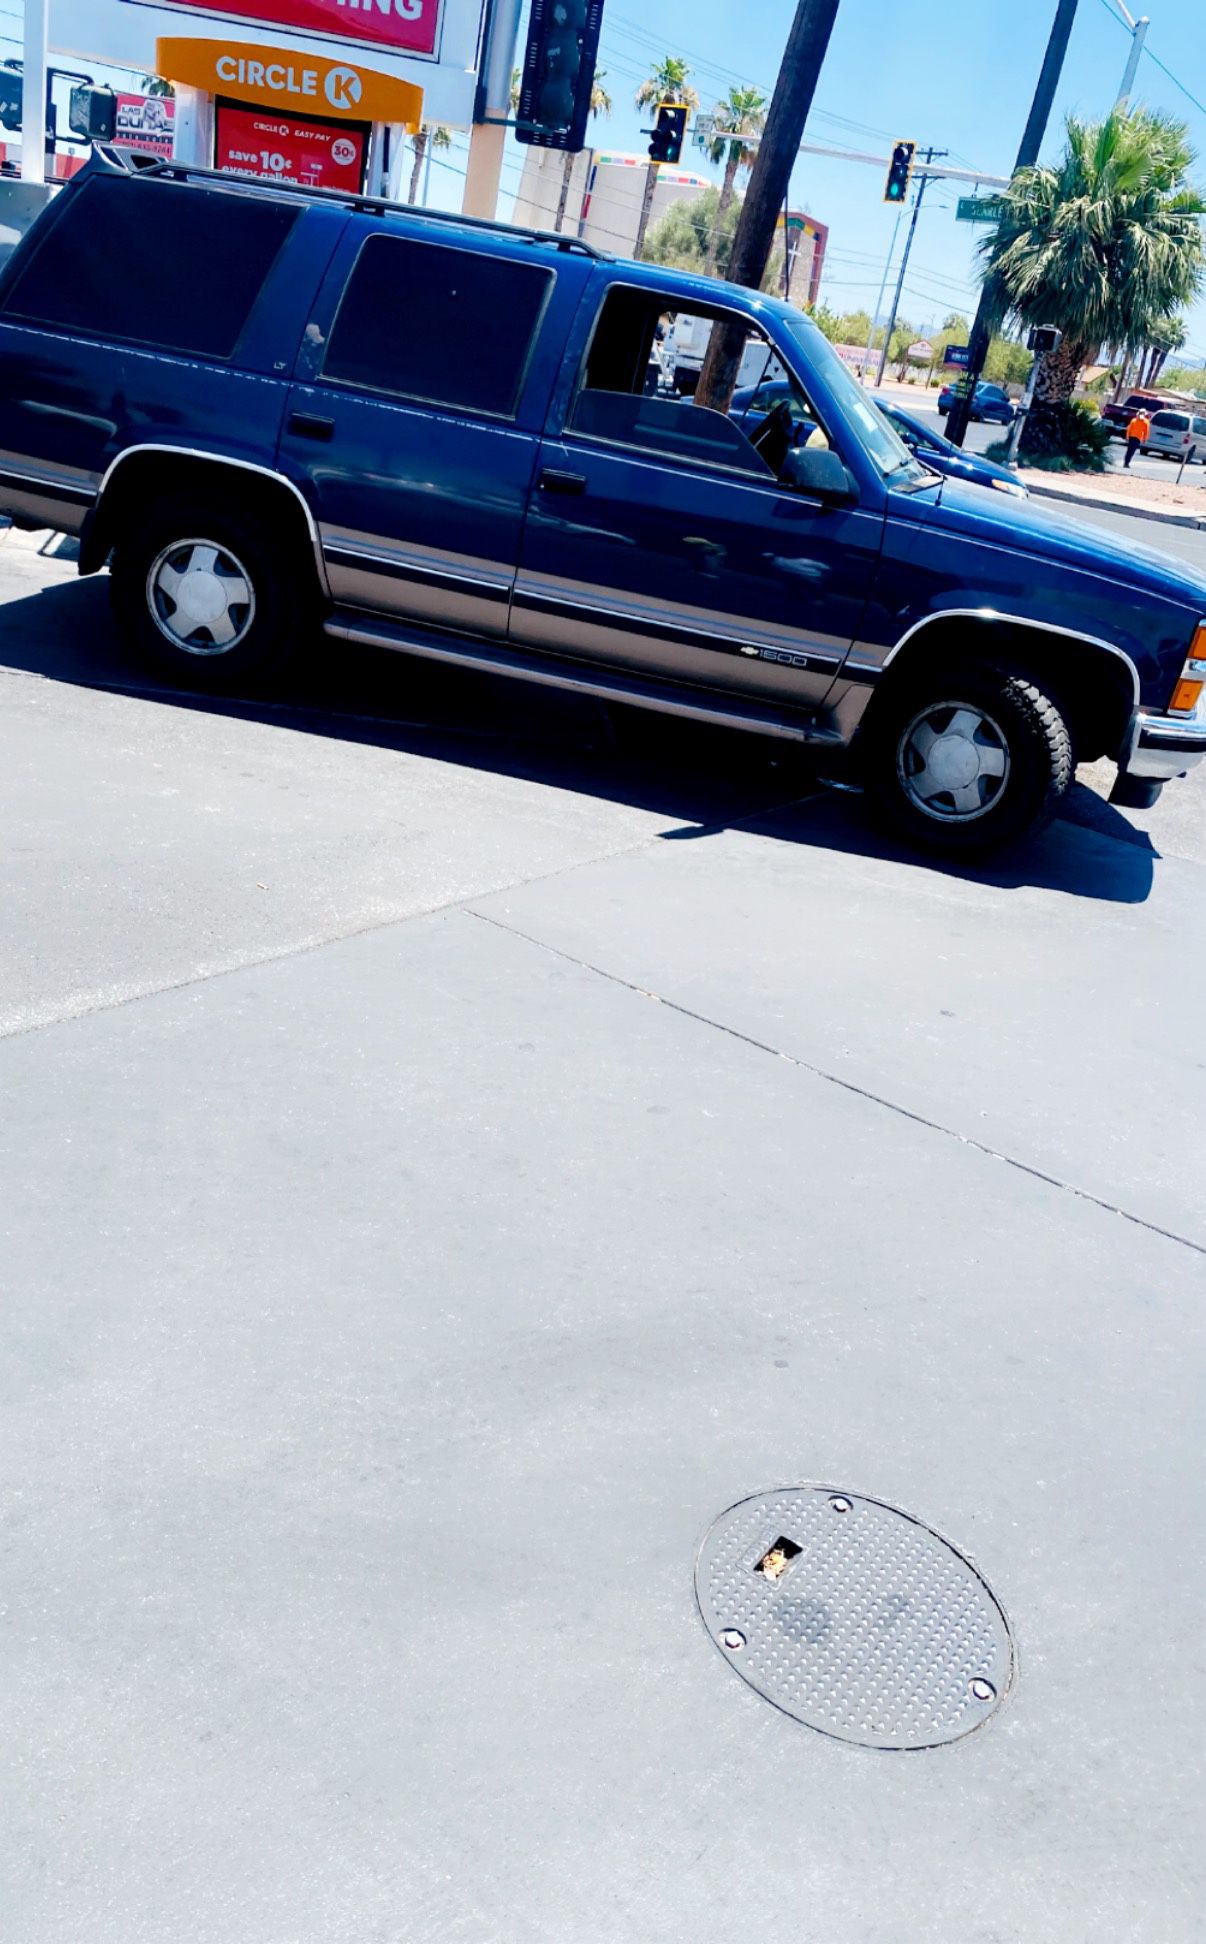 1996 Chevrolet Tahoe